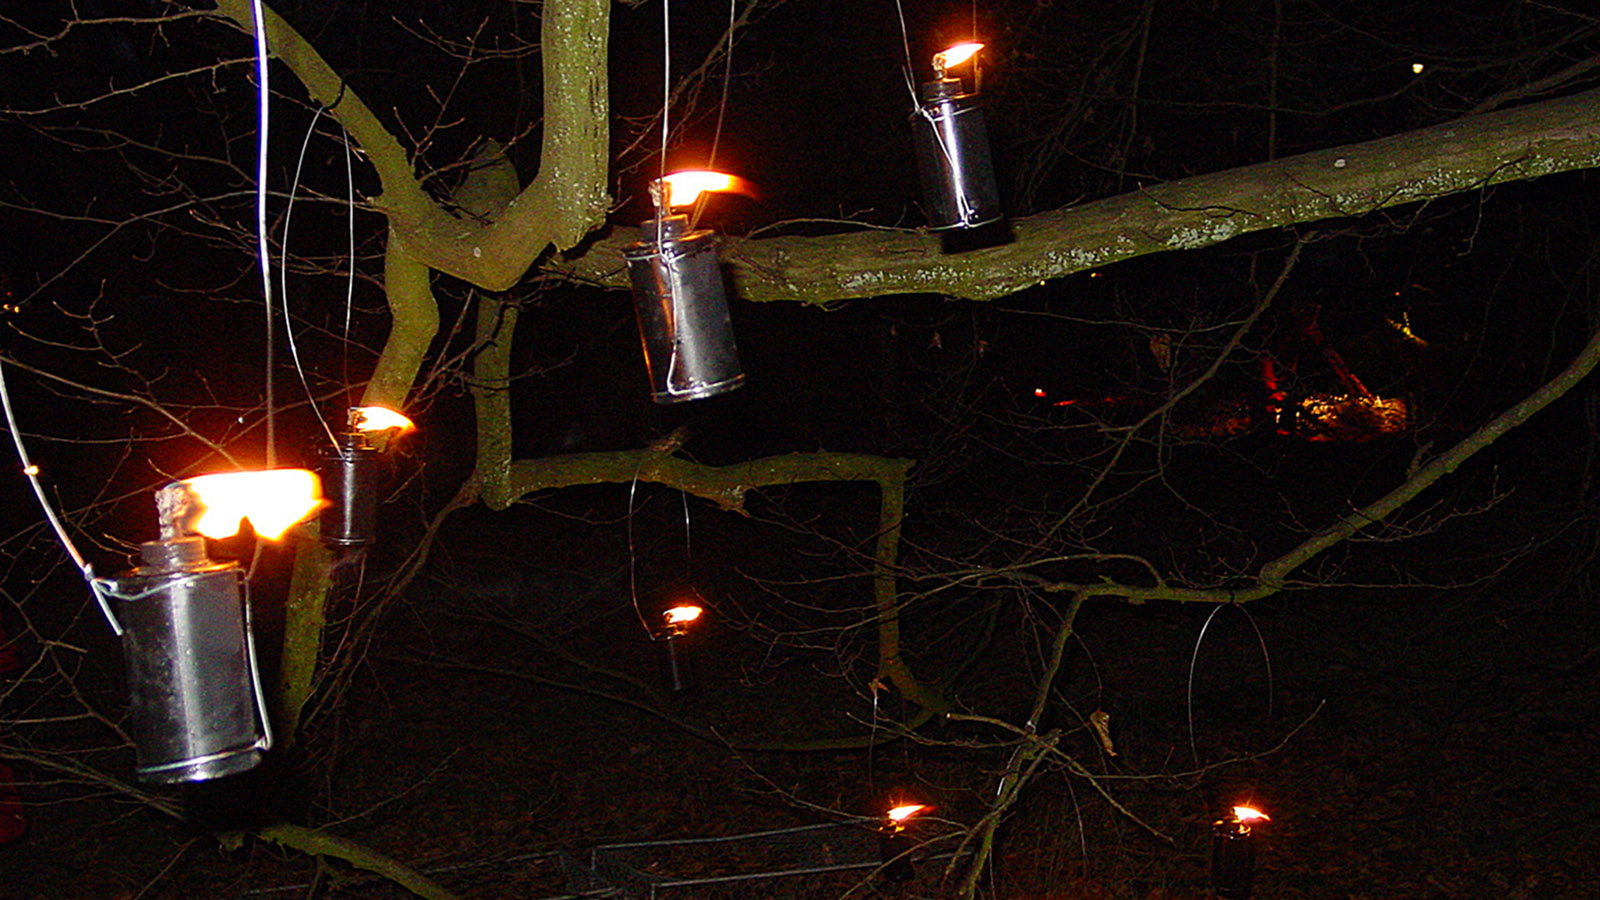 Weihnachten bringt Licht ins Dunkel - auch in der Natur, wie hier bei Frederiksdal. Foto: Hilke Maunder